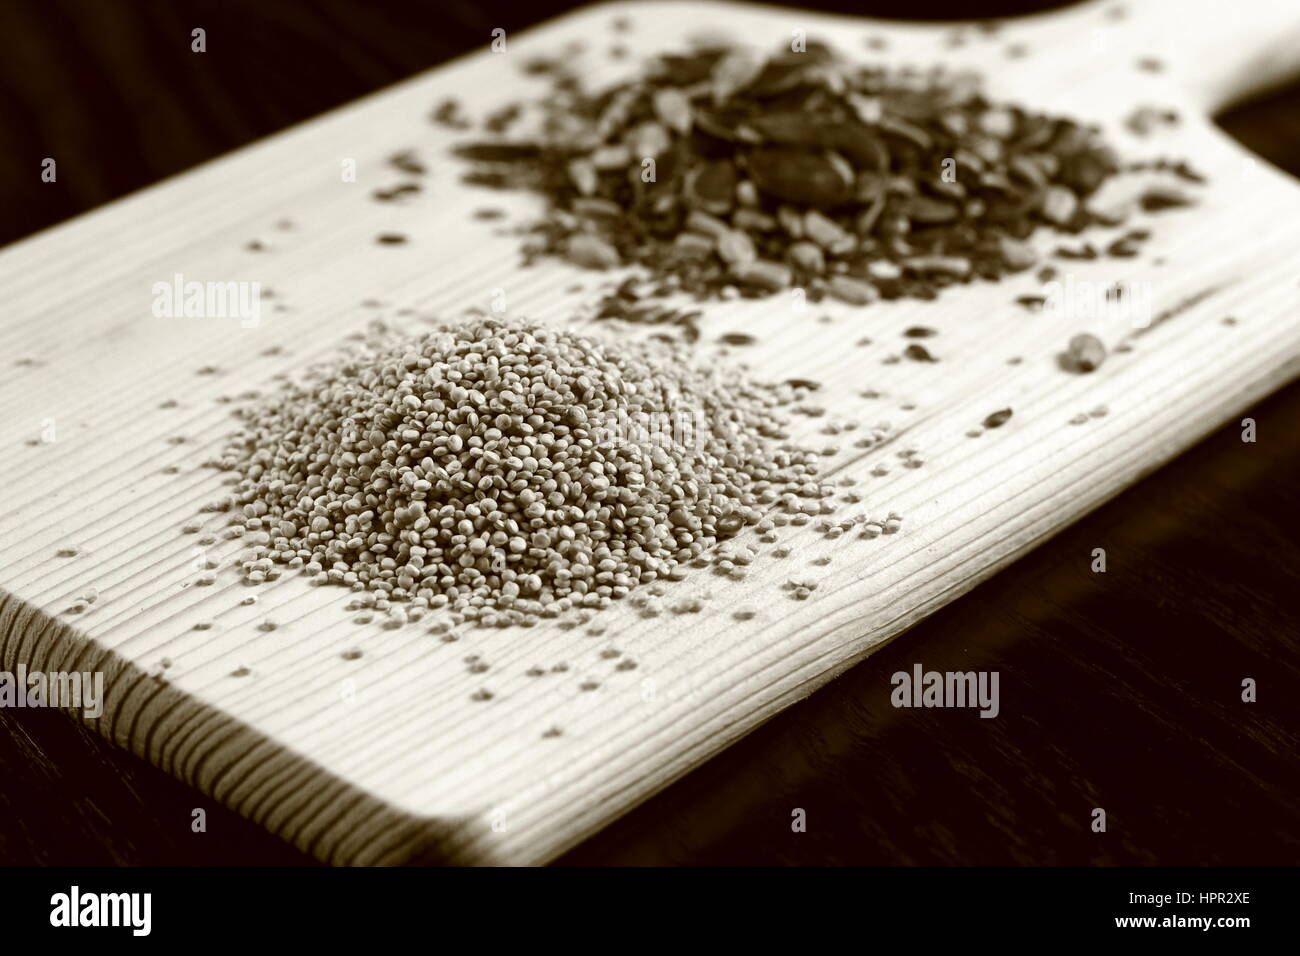 Roh (ungekocht) Quinoa (Vordergrund) und verschiedenen essbaren Samen (im Hintergrund) auf Holzbrett liegend auf dunklen Holztisch - Monochrome Sepia-Effekt Stockfoto